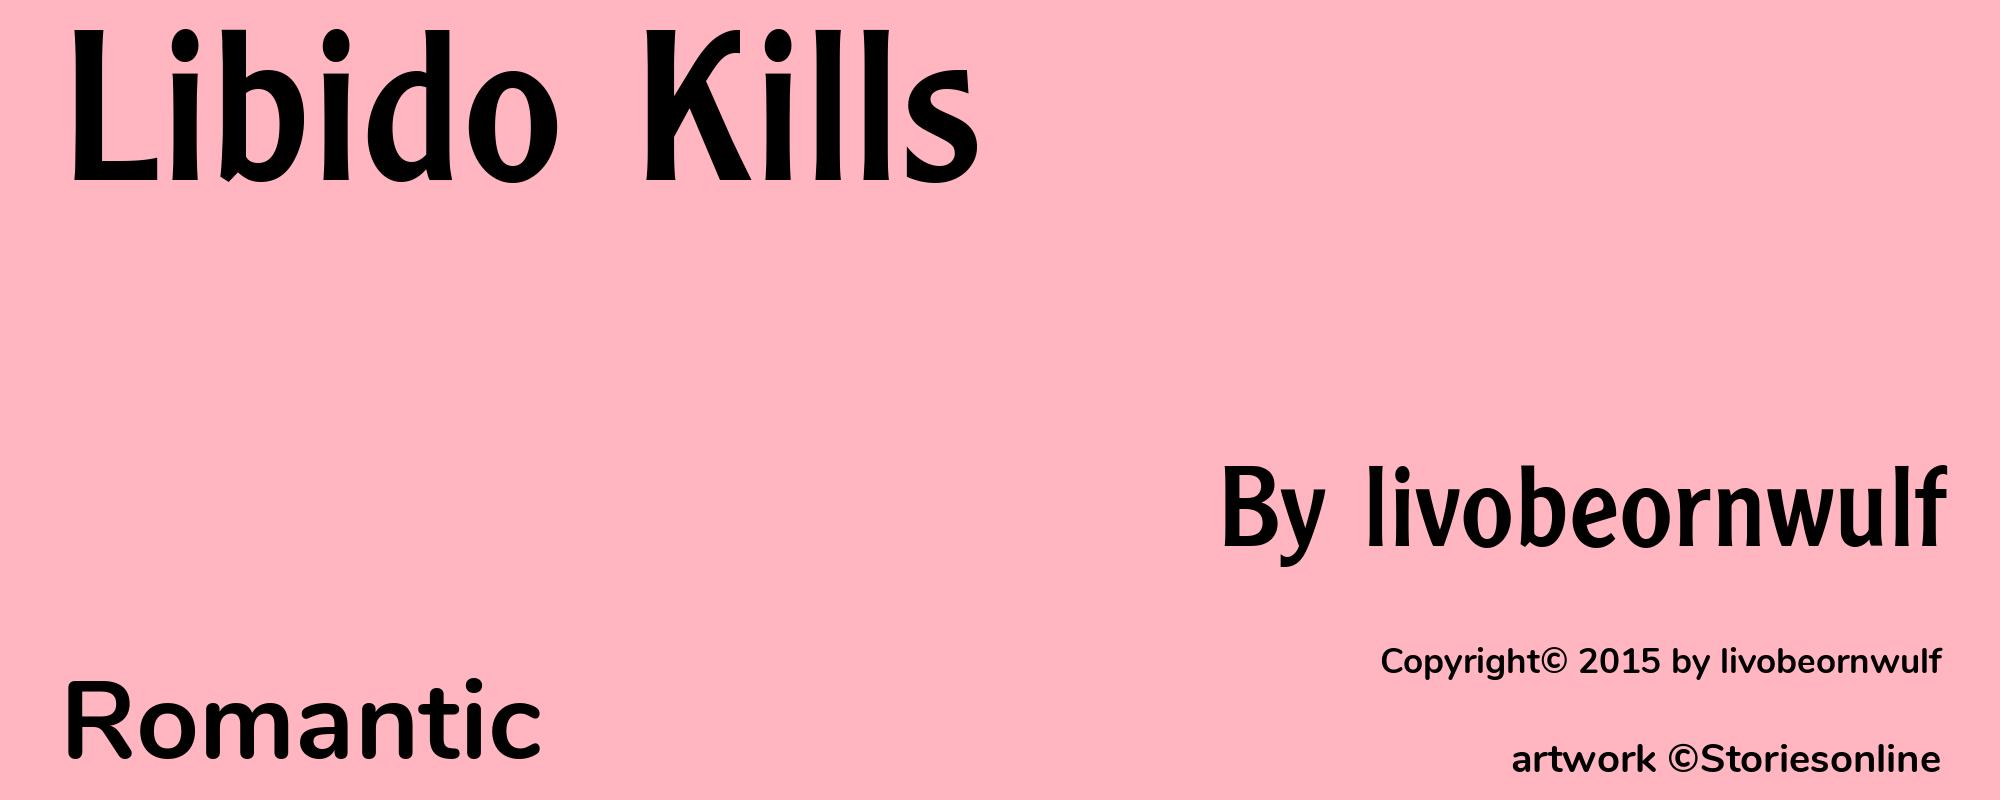 Libido Kills - Cover